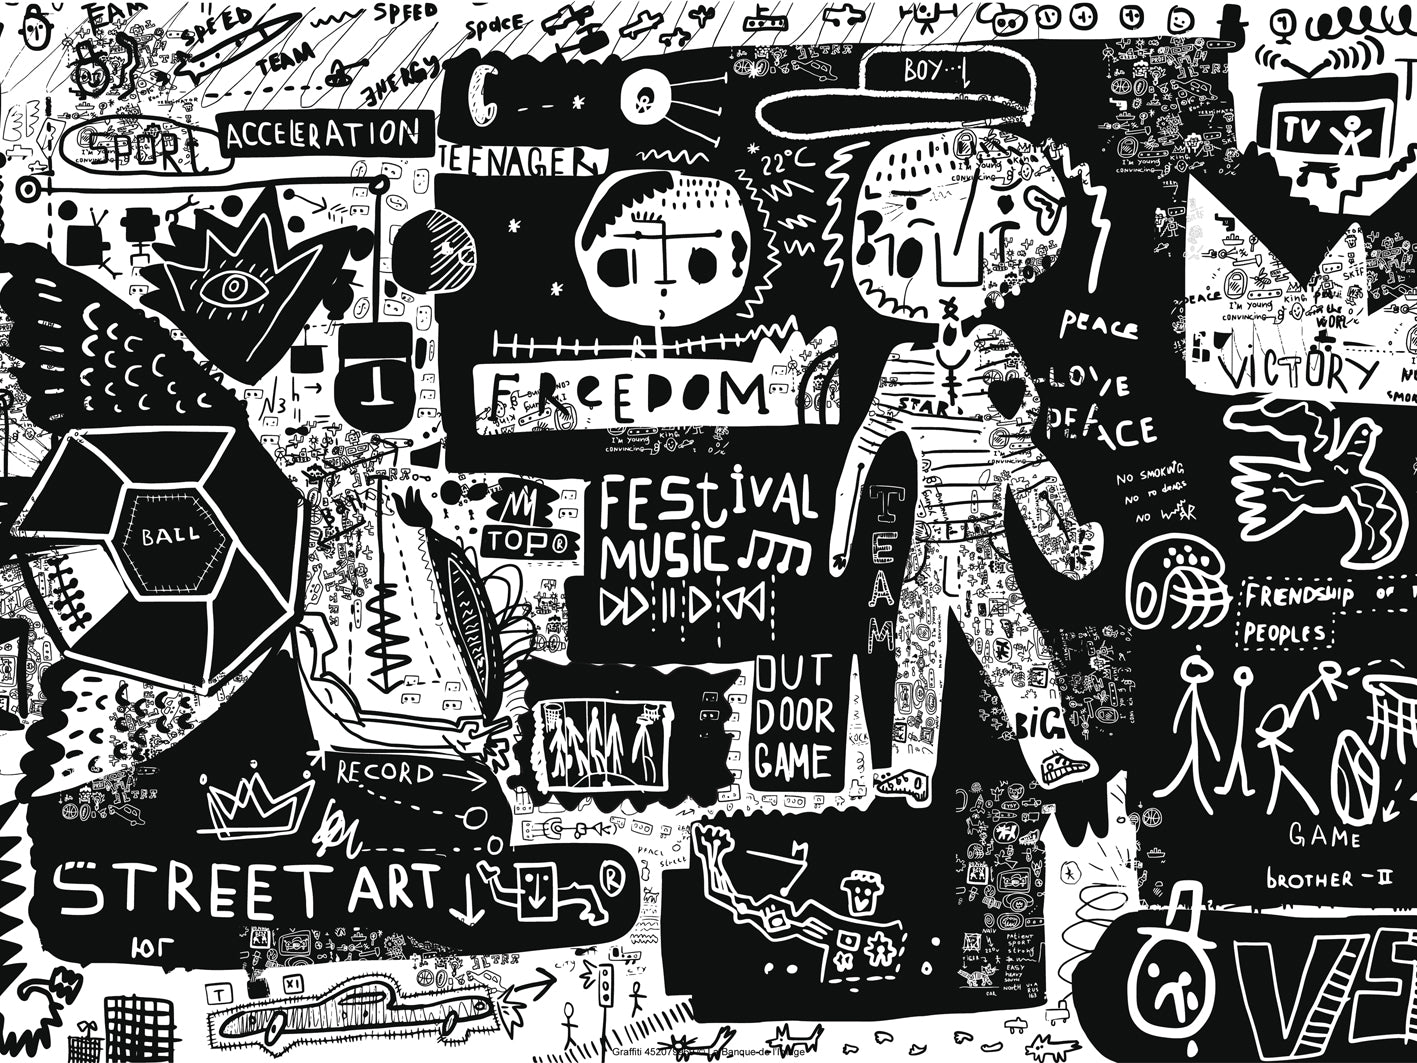 Street Art - Freedom team